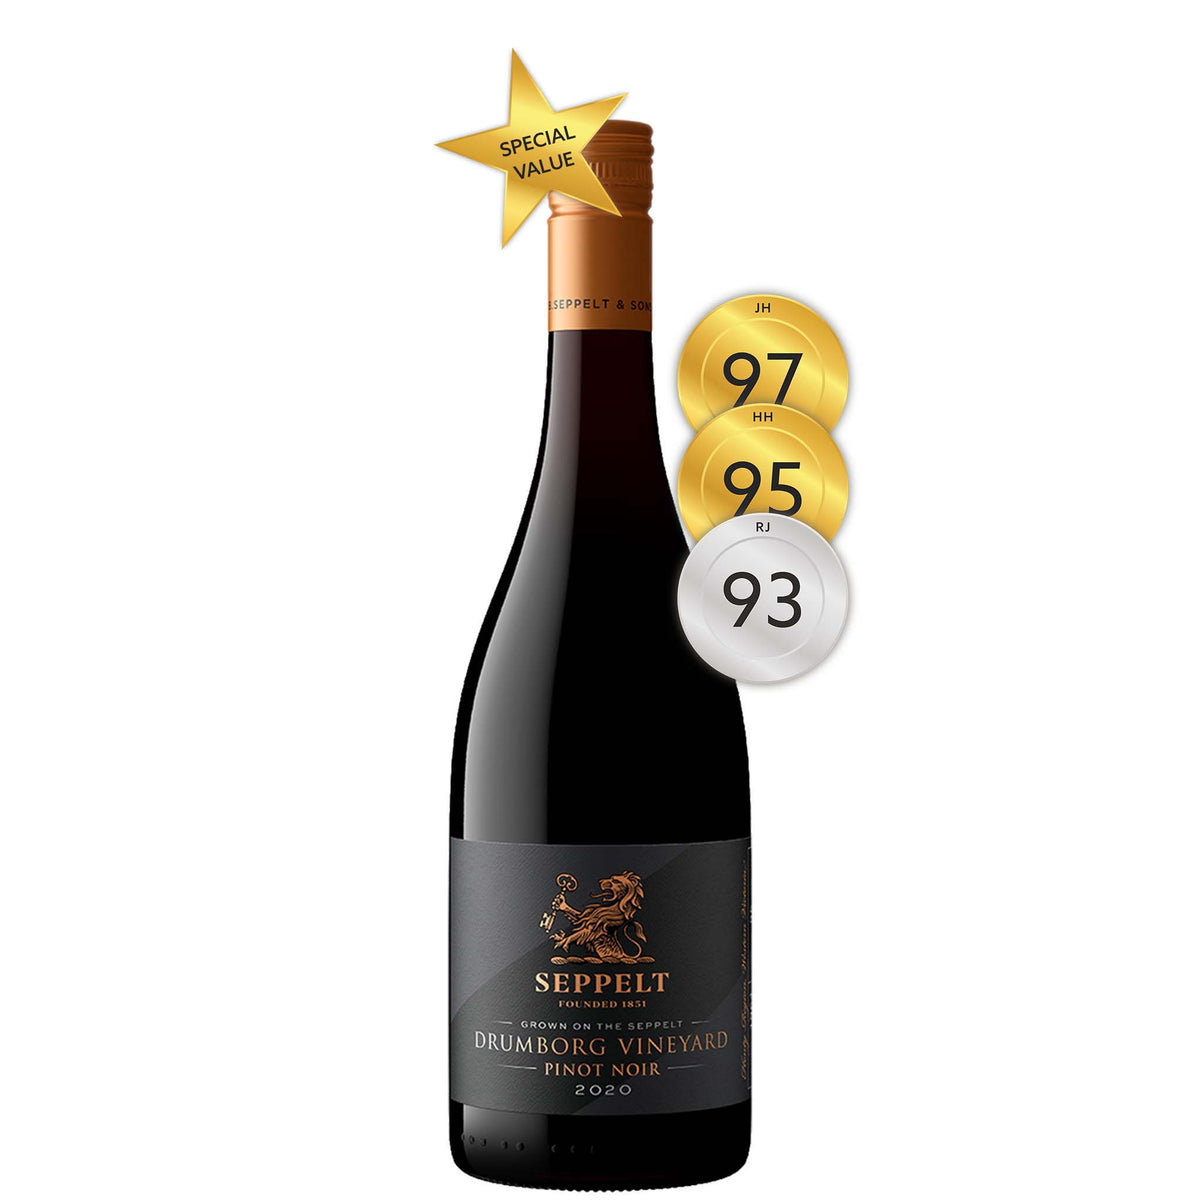 Seppelt Drumborg Vineyard Pinot Noir 2020 (375ml)